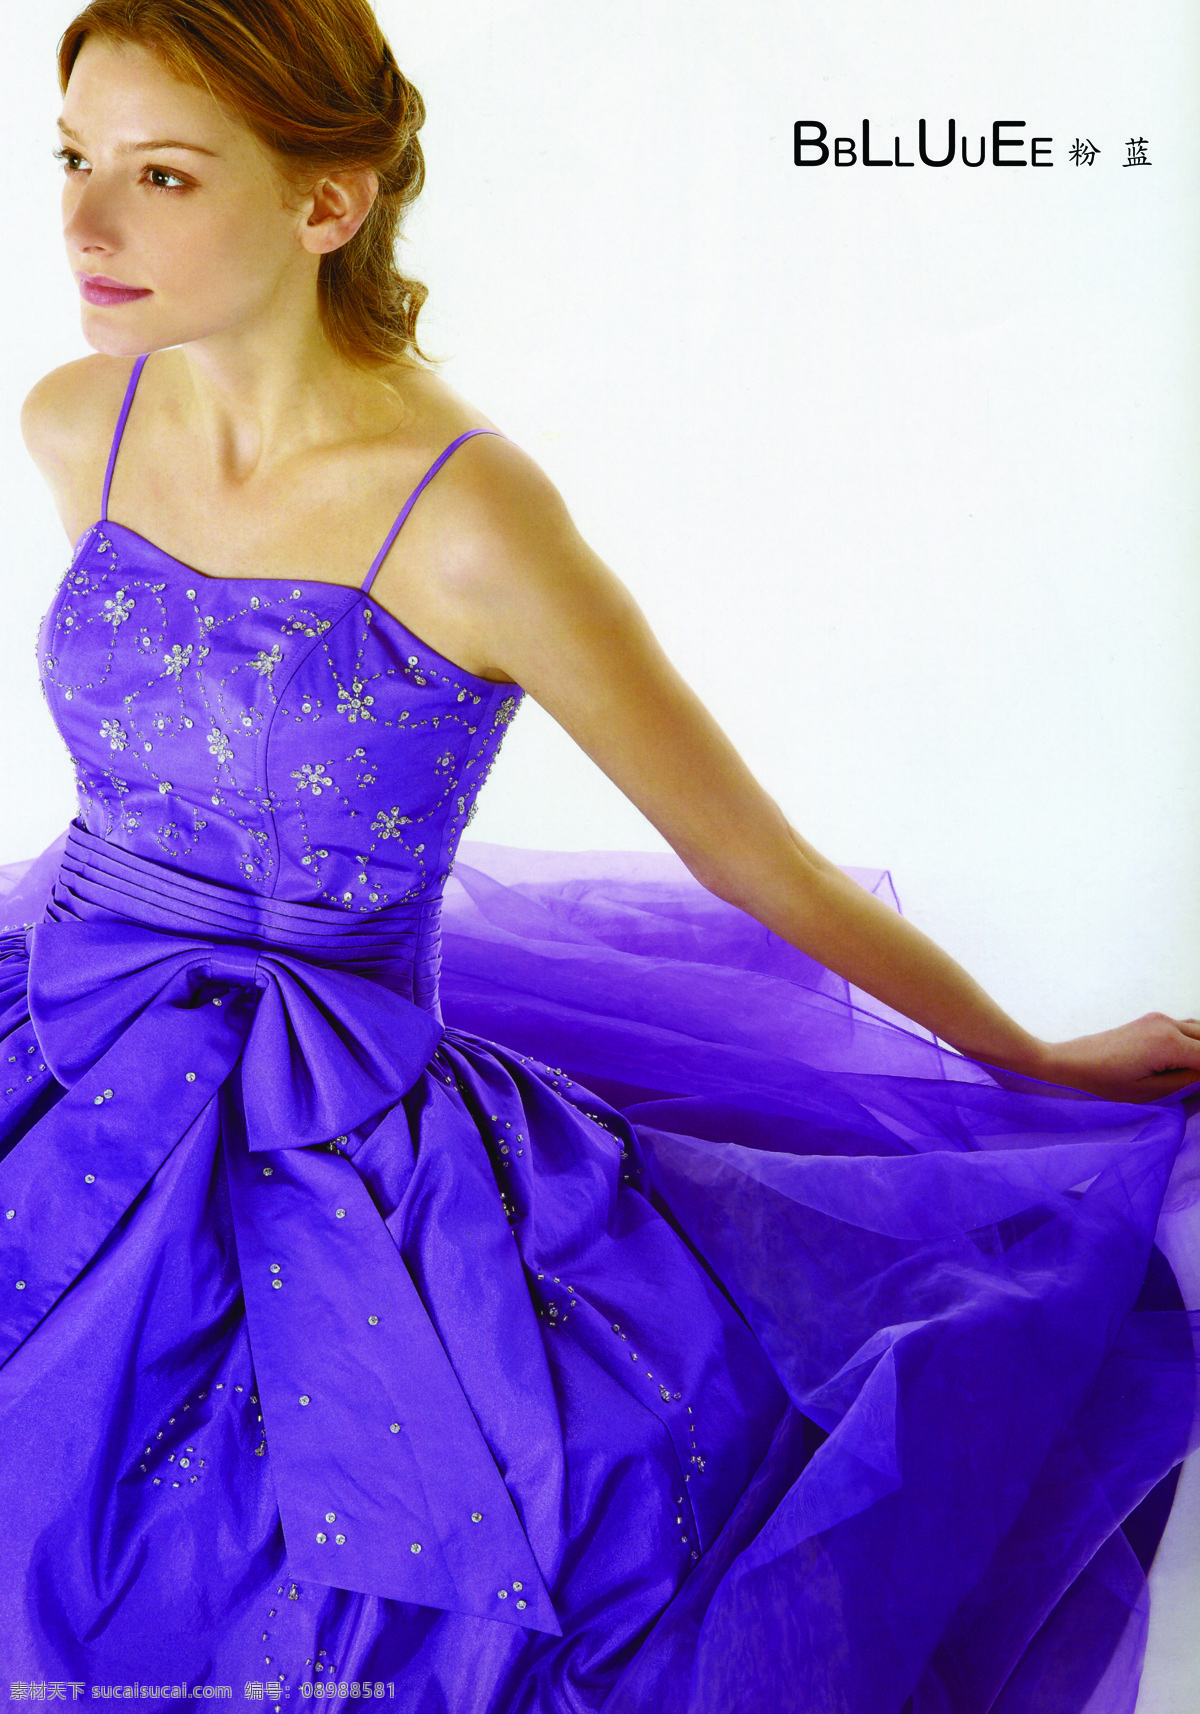 粉蓝衣橱服饰 logo 2010 春夏 女装 紫色晚礼服 金发女郎 骨感少女 时尚女装 欧美女模 人物摄影 人物图库 分辨率